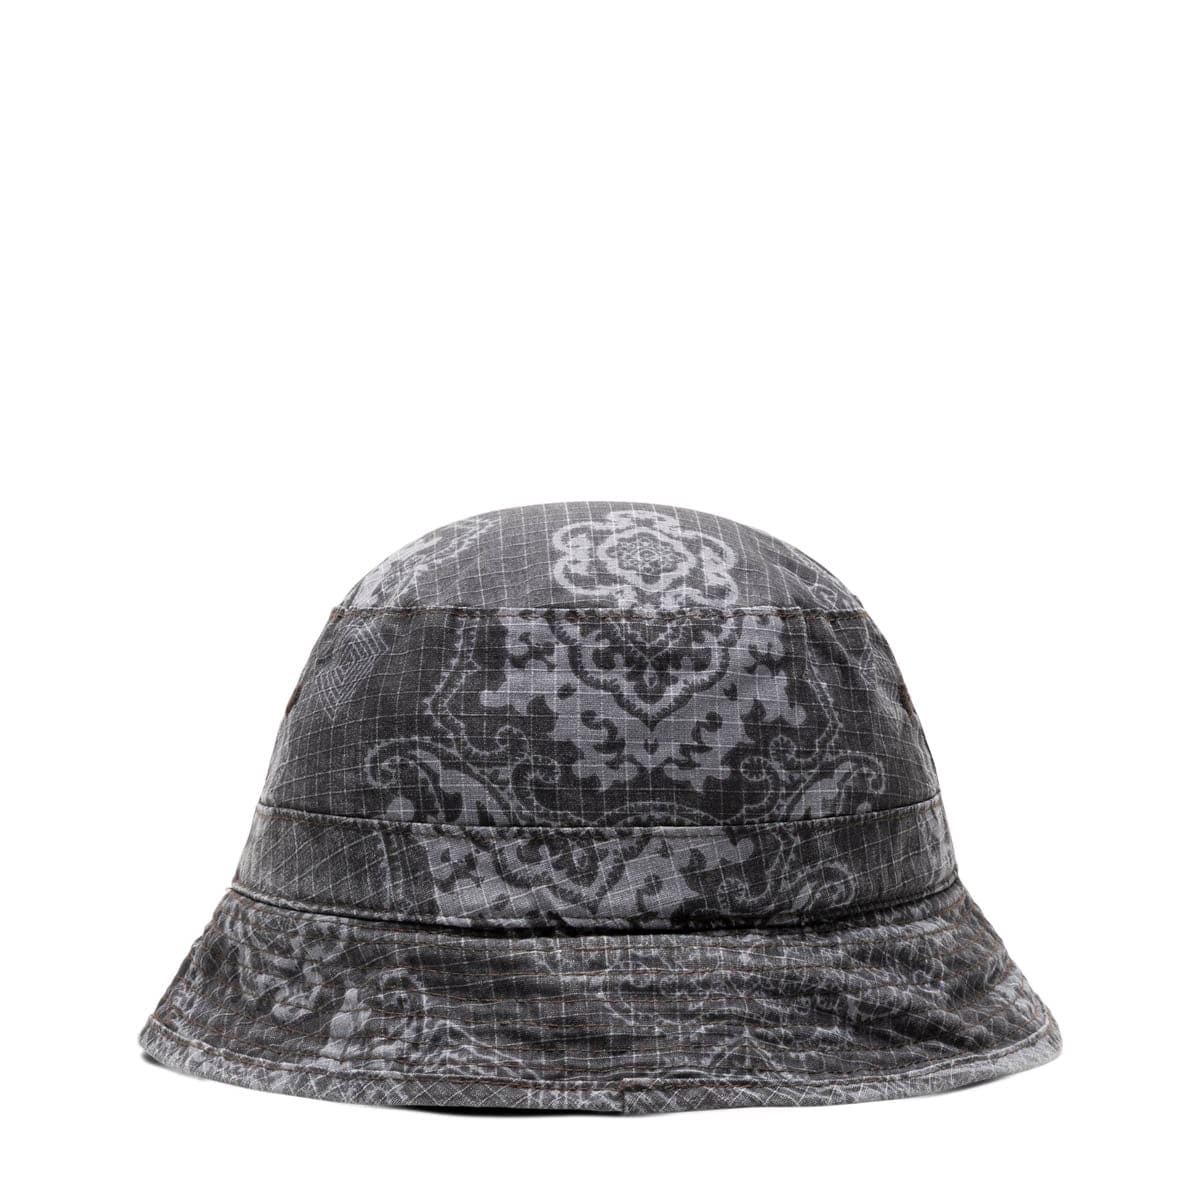 Carhartt WIP Accessories - HATS - Misc Hat VERSE BUCKET HAT